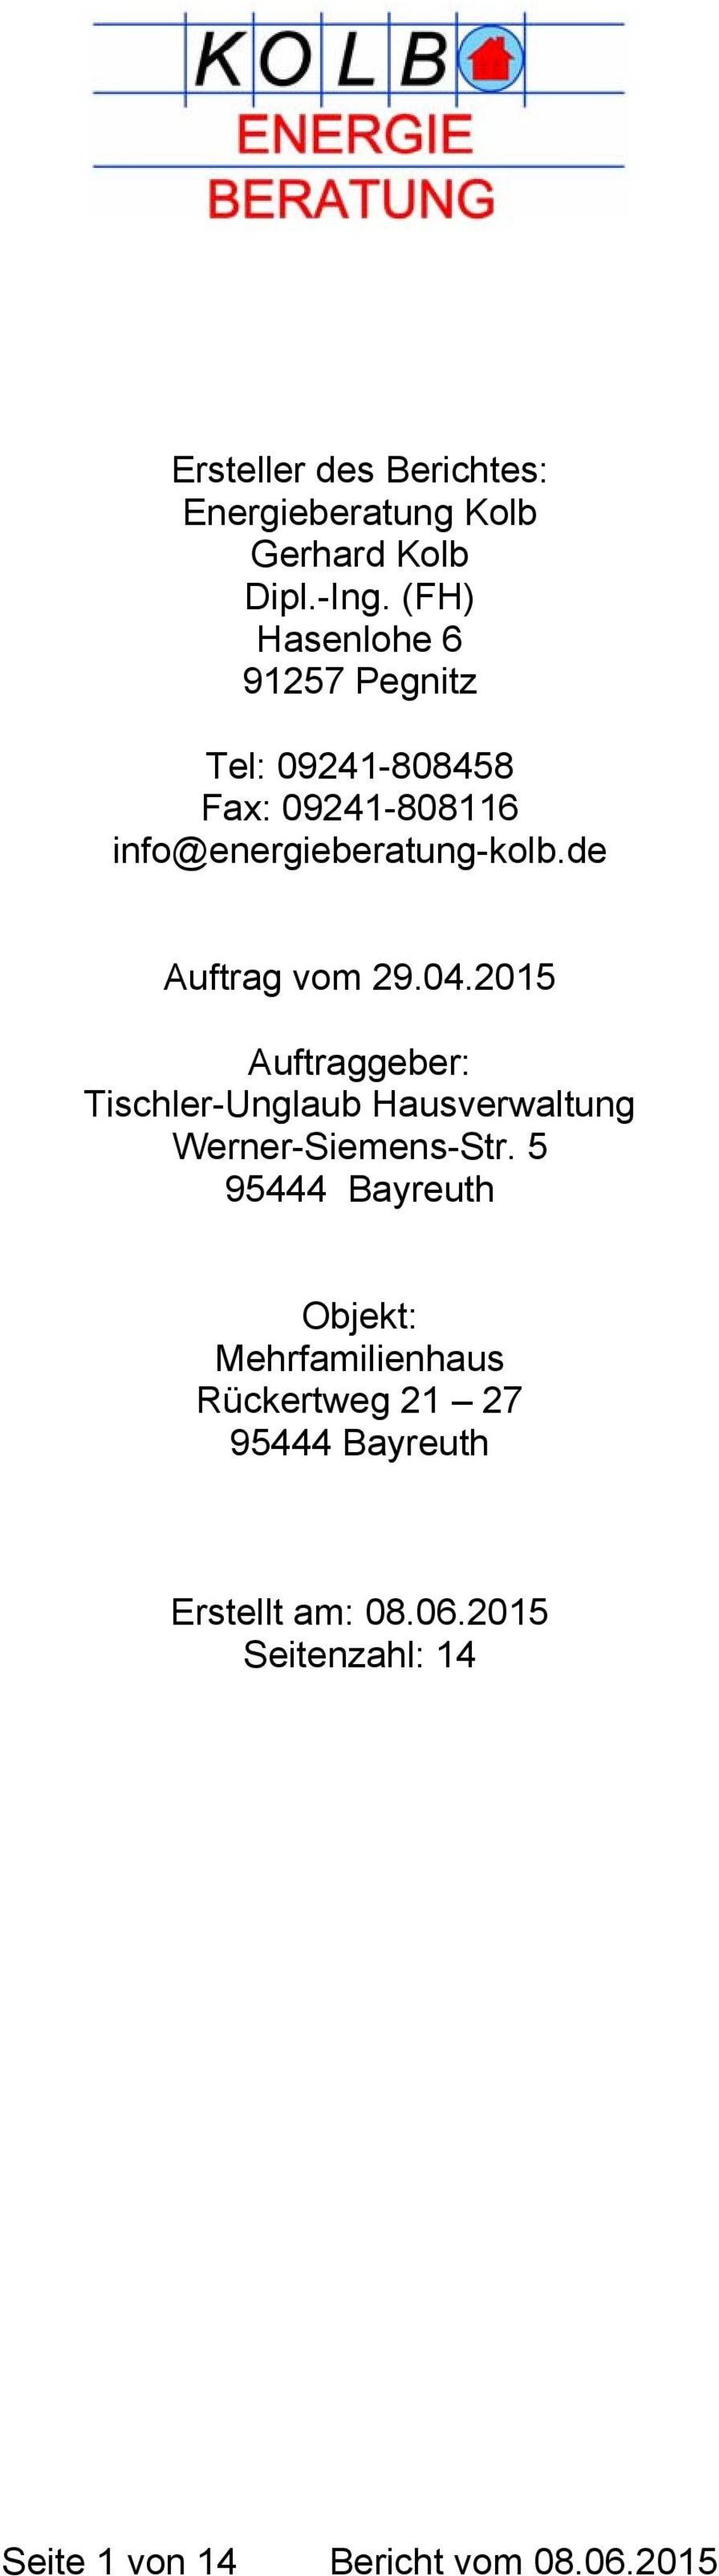 de Auftrag vom 29.04.2015 Auftraggeber: Tischler-Unglaub Hausverwaltung Werner-Siemens-Str.